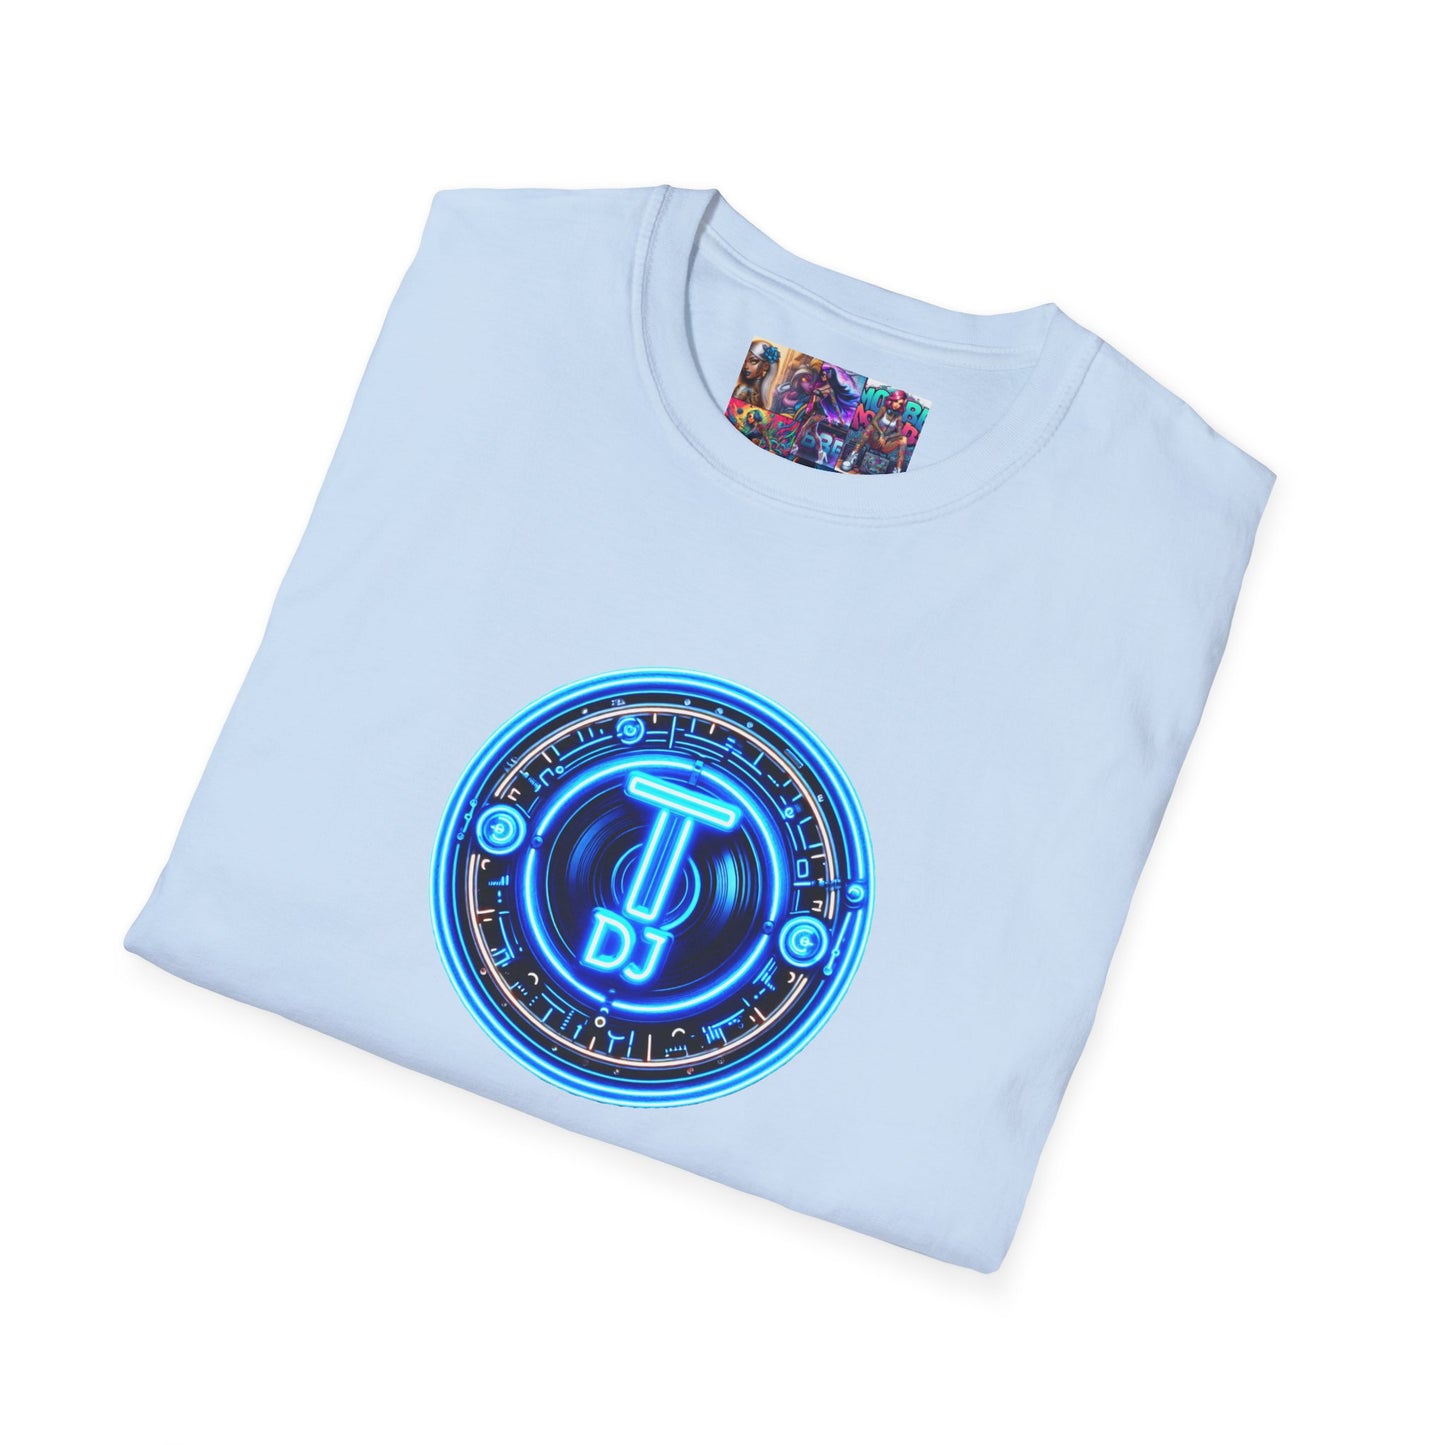 MDBTDJ#5 Unisex Softstyle T-Shirt Tattooed Dj's Limited Edition, T-Shirt, Tattooed Djs Shop